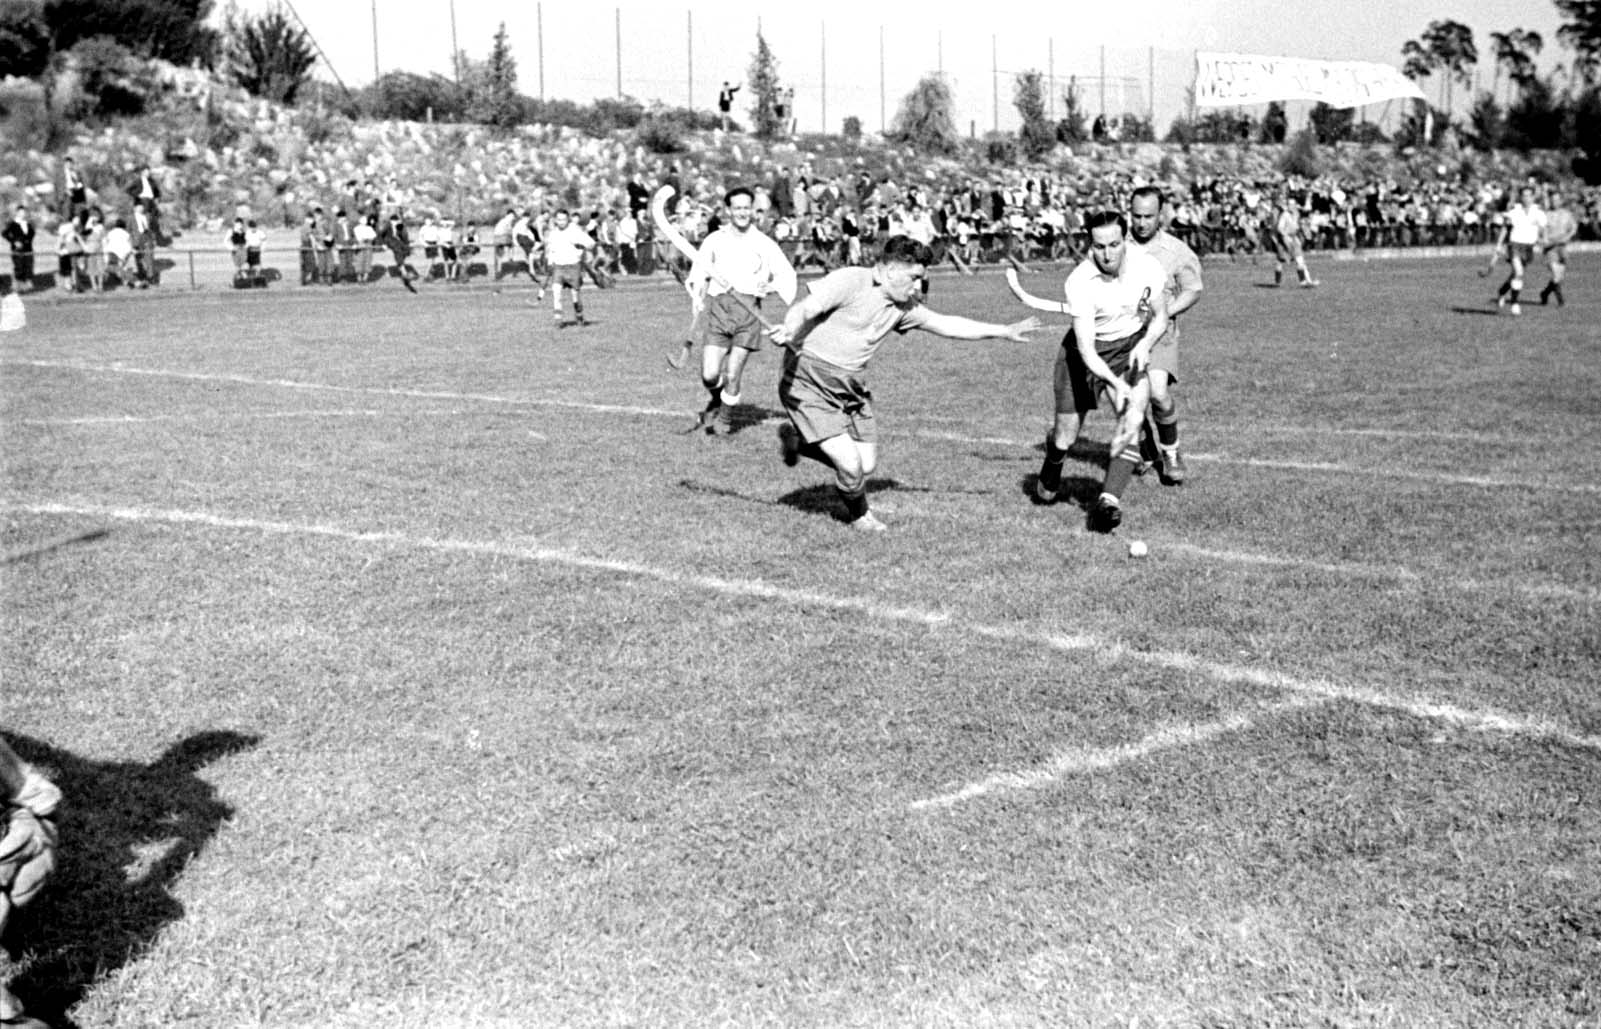 ברלין, גרמניה, 1937, משחק הוקי במסגרת תחרויות הספורט הבינלאומיות "בר כוכבא", בהשתתפות הכח וינה